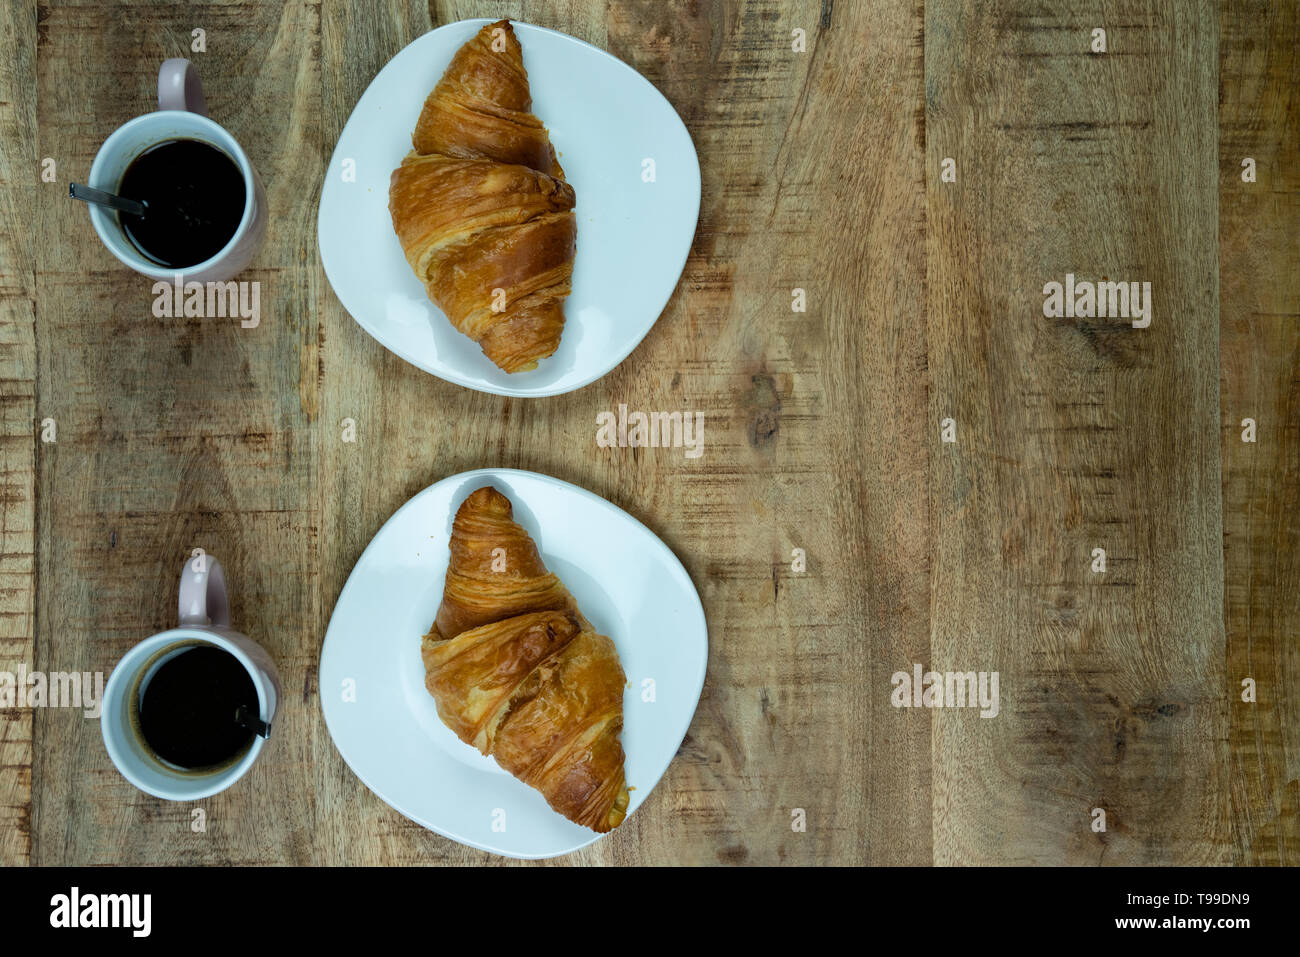 Le petit-déjeuner ou déjeuner pour deux. Des croissants fraîchement cuits sur une plaque avec du café. Sur un fond de bois, vue du dessus Banque D'Images